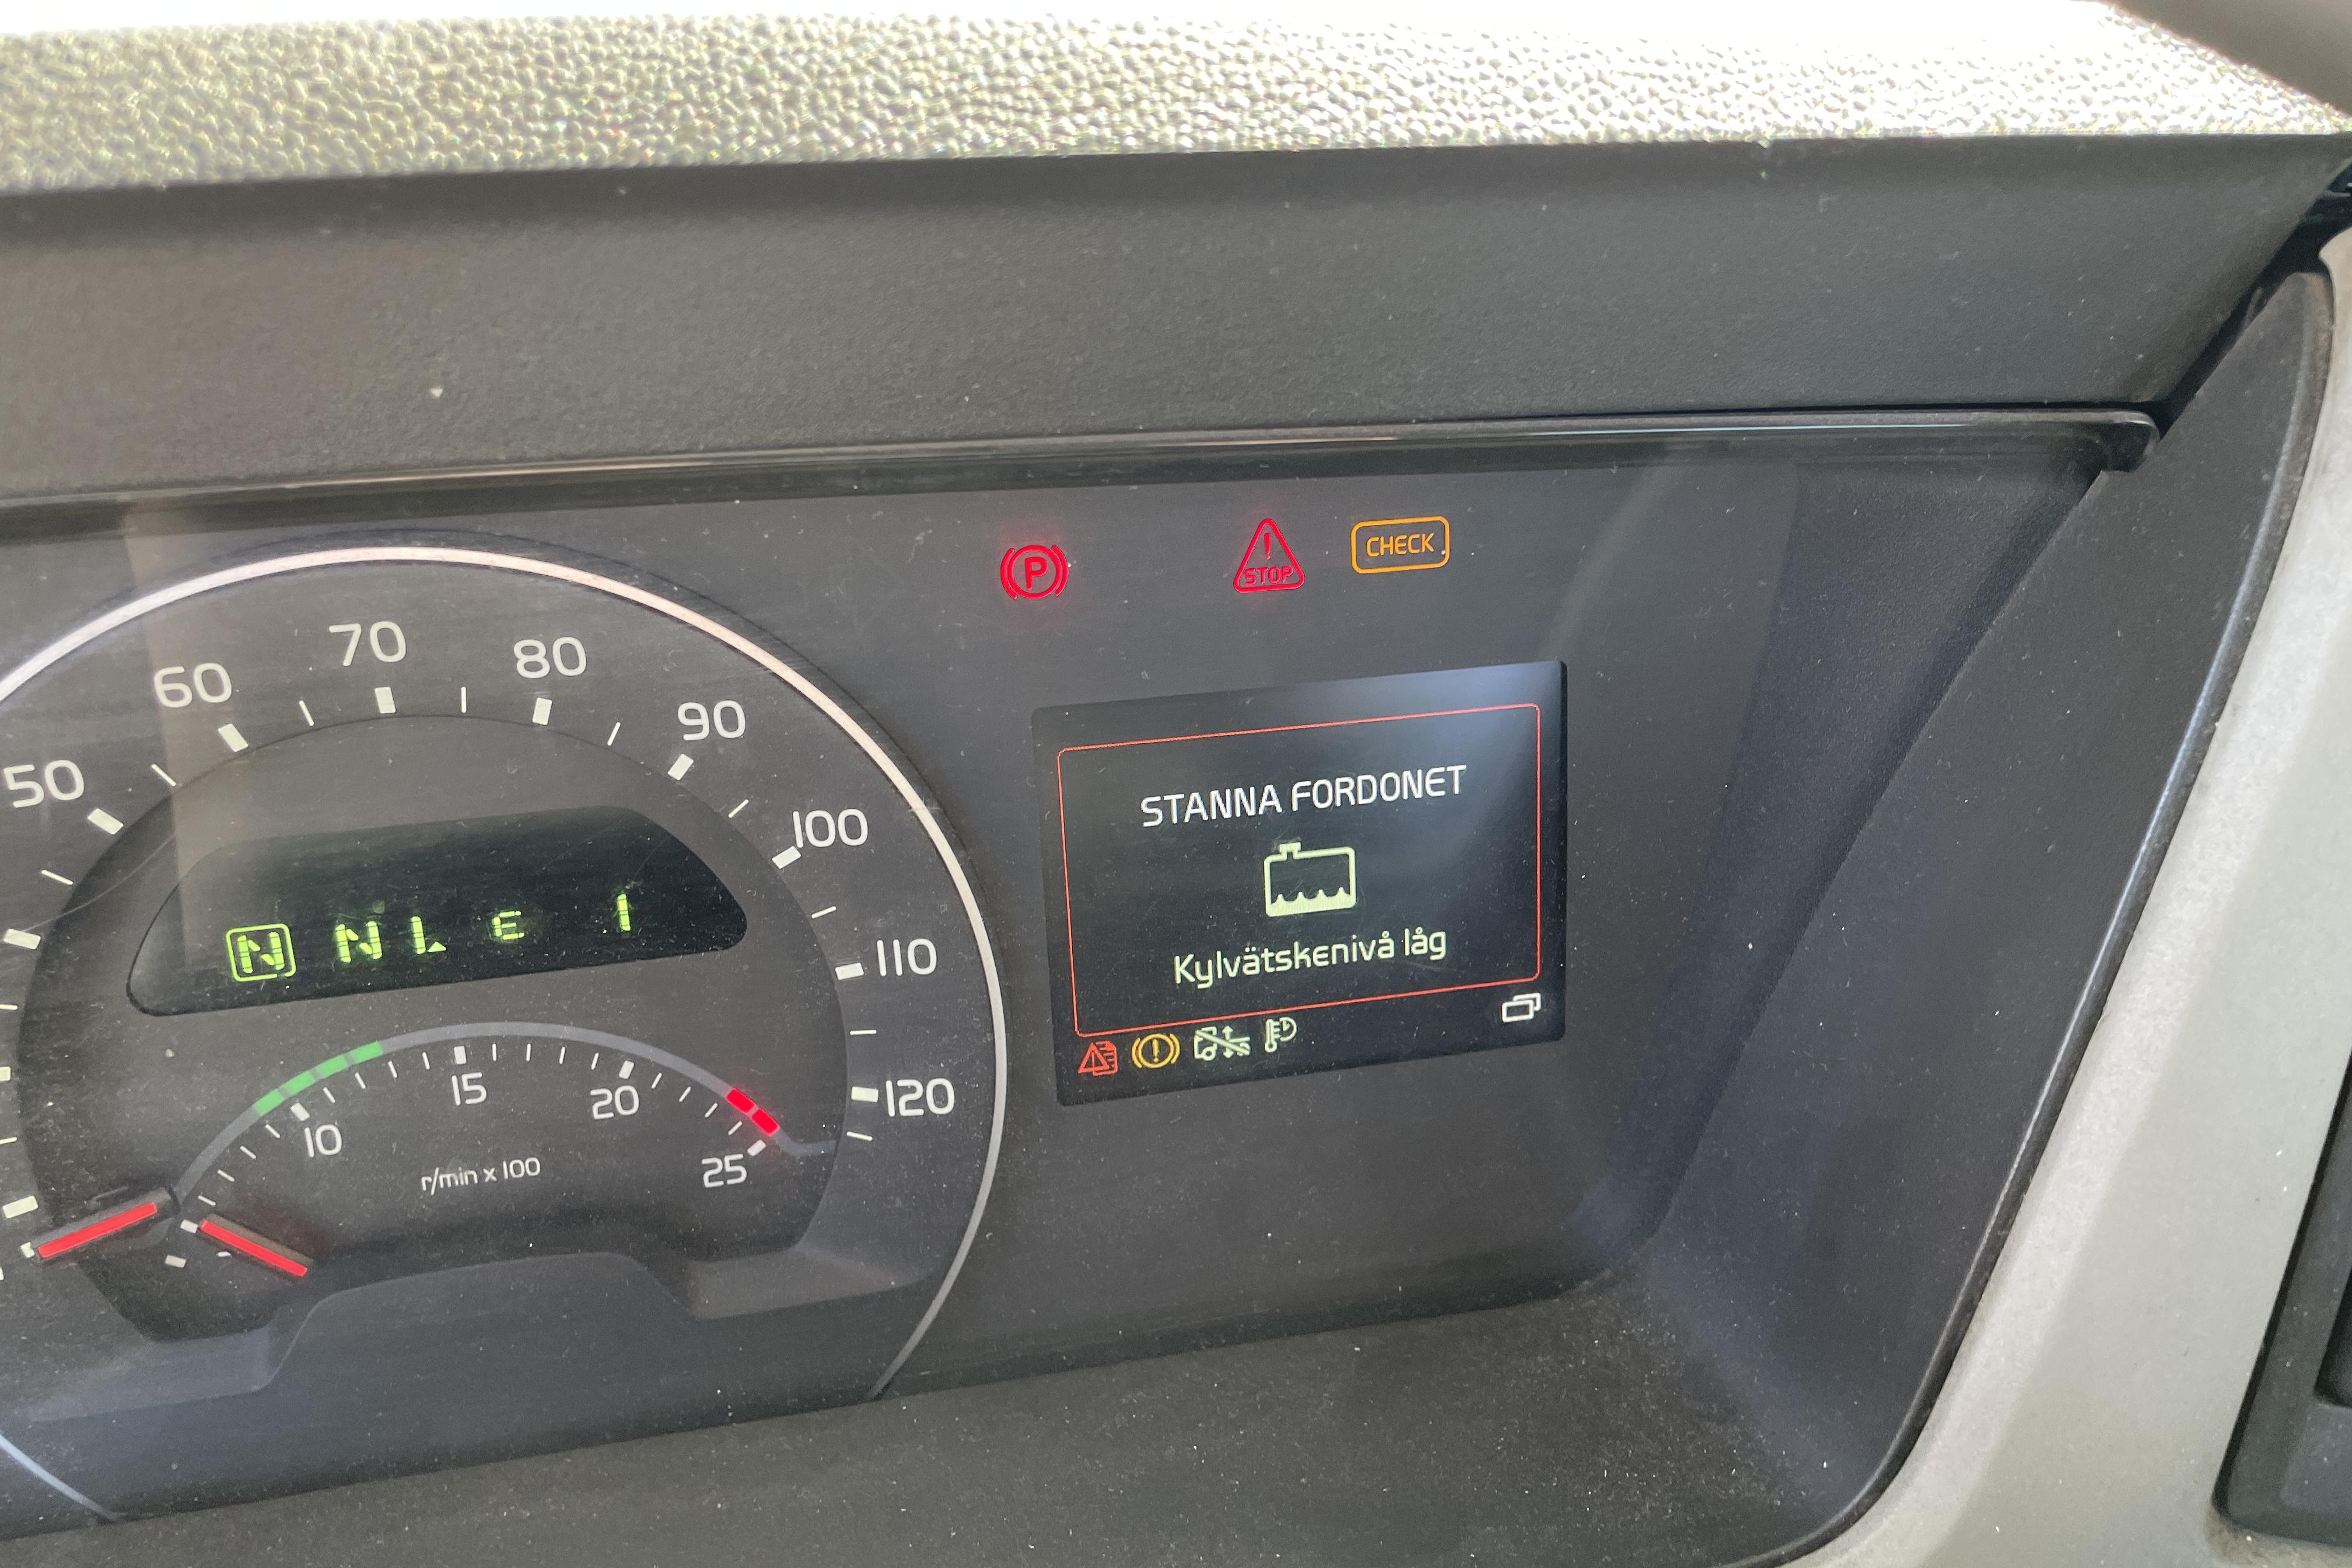 Volvo FM500 - 449 991 km - Automatyczna - 2014